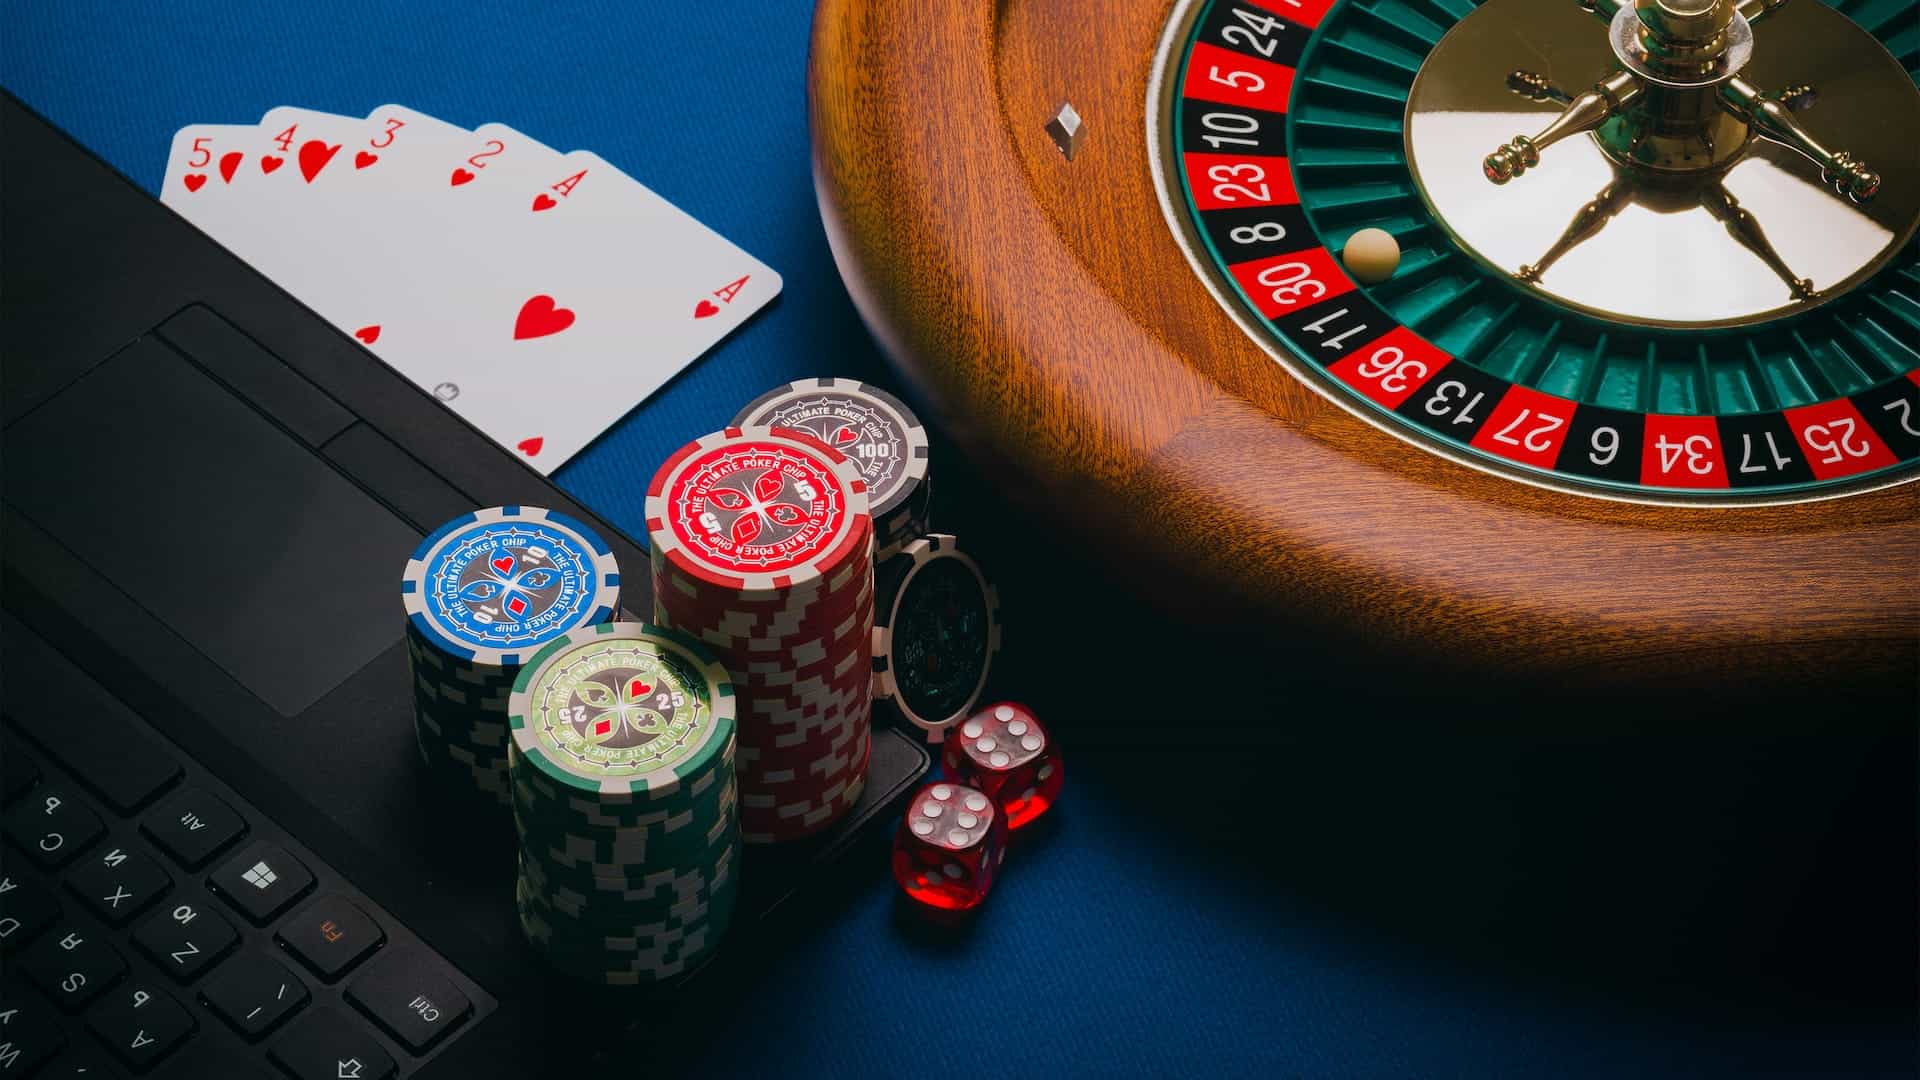 Roda roulette, chip kasino, dan kartu ditempatkan di sebelah laptop.